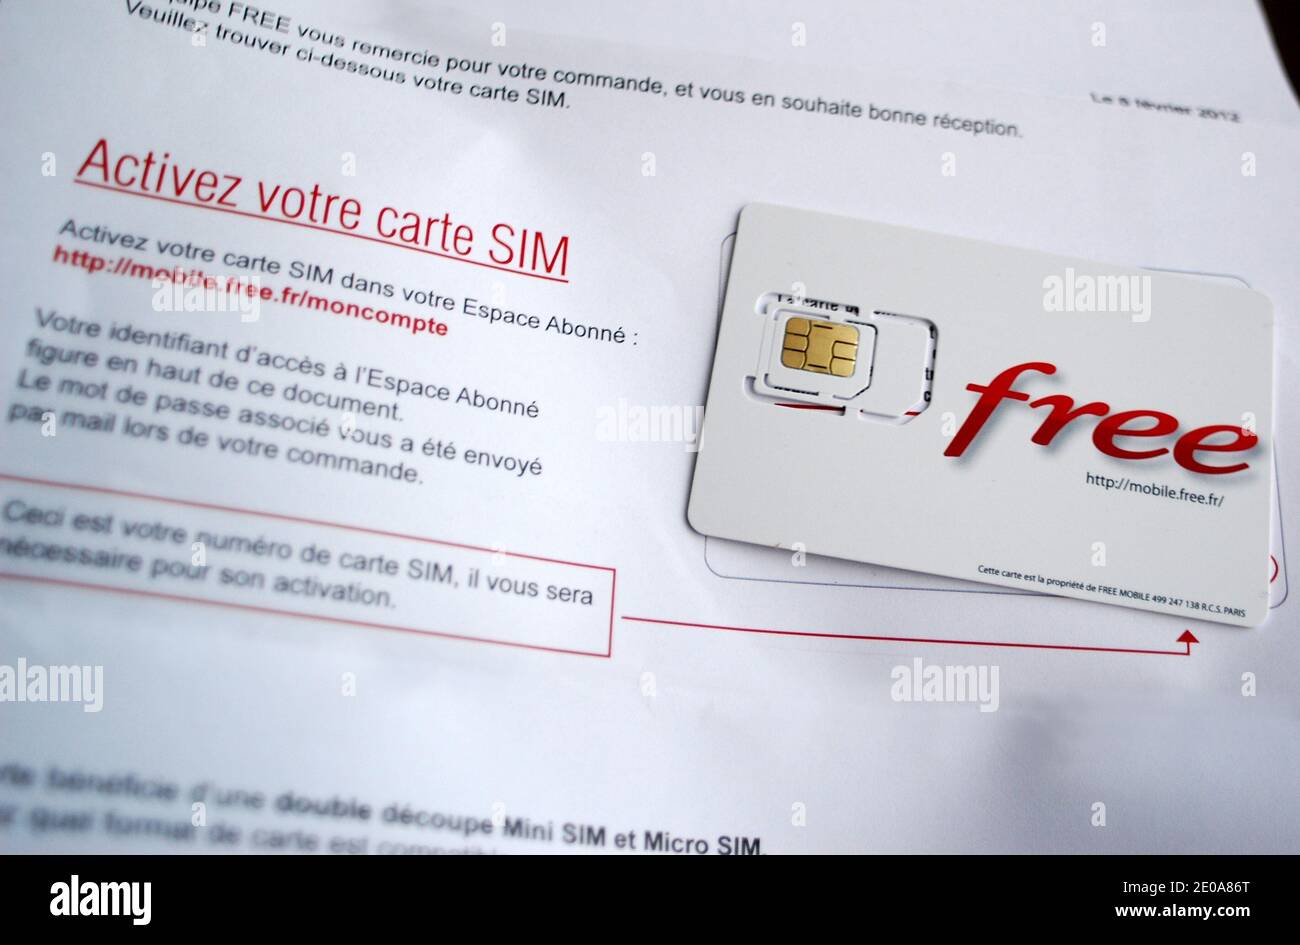 Les premières cartes Nano-SIM livrées en Allemagne - Belgium iPhone